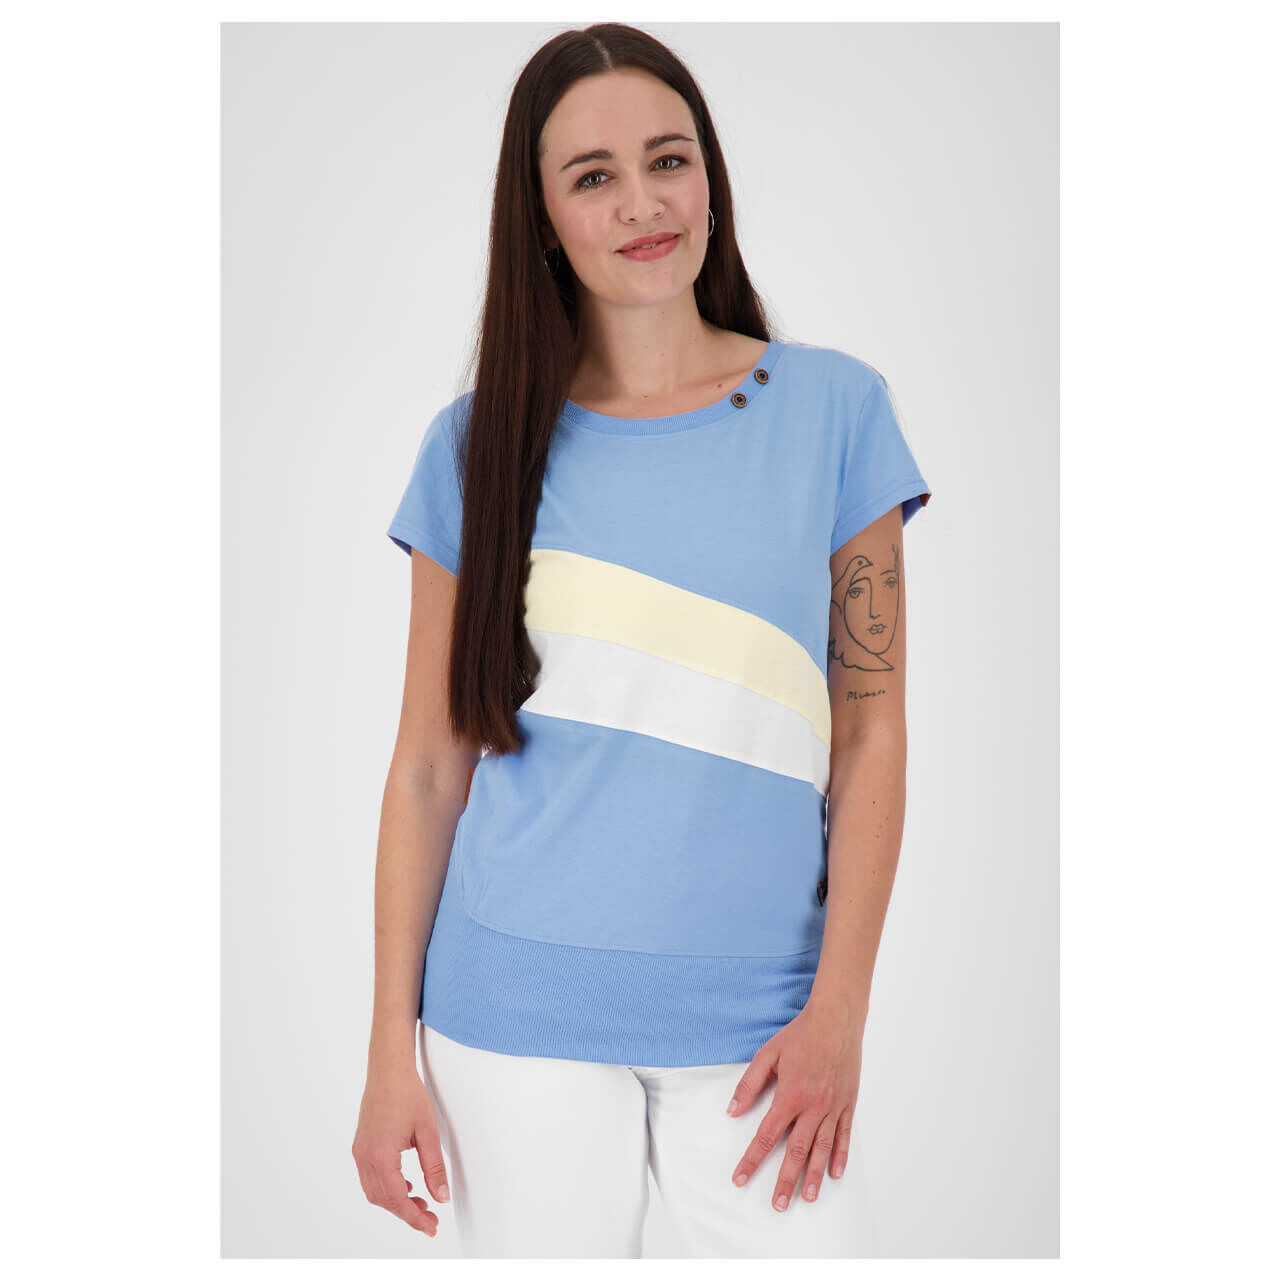 Alife and Kickin Clea T-Shirt für Damen in Hellblau gestreift, FarbNr.: 5200